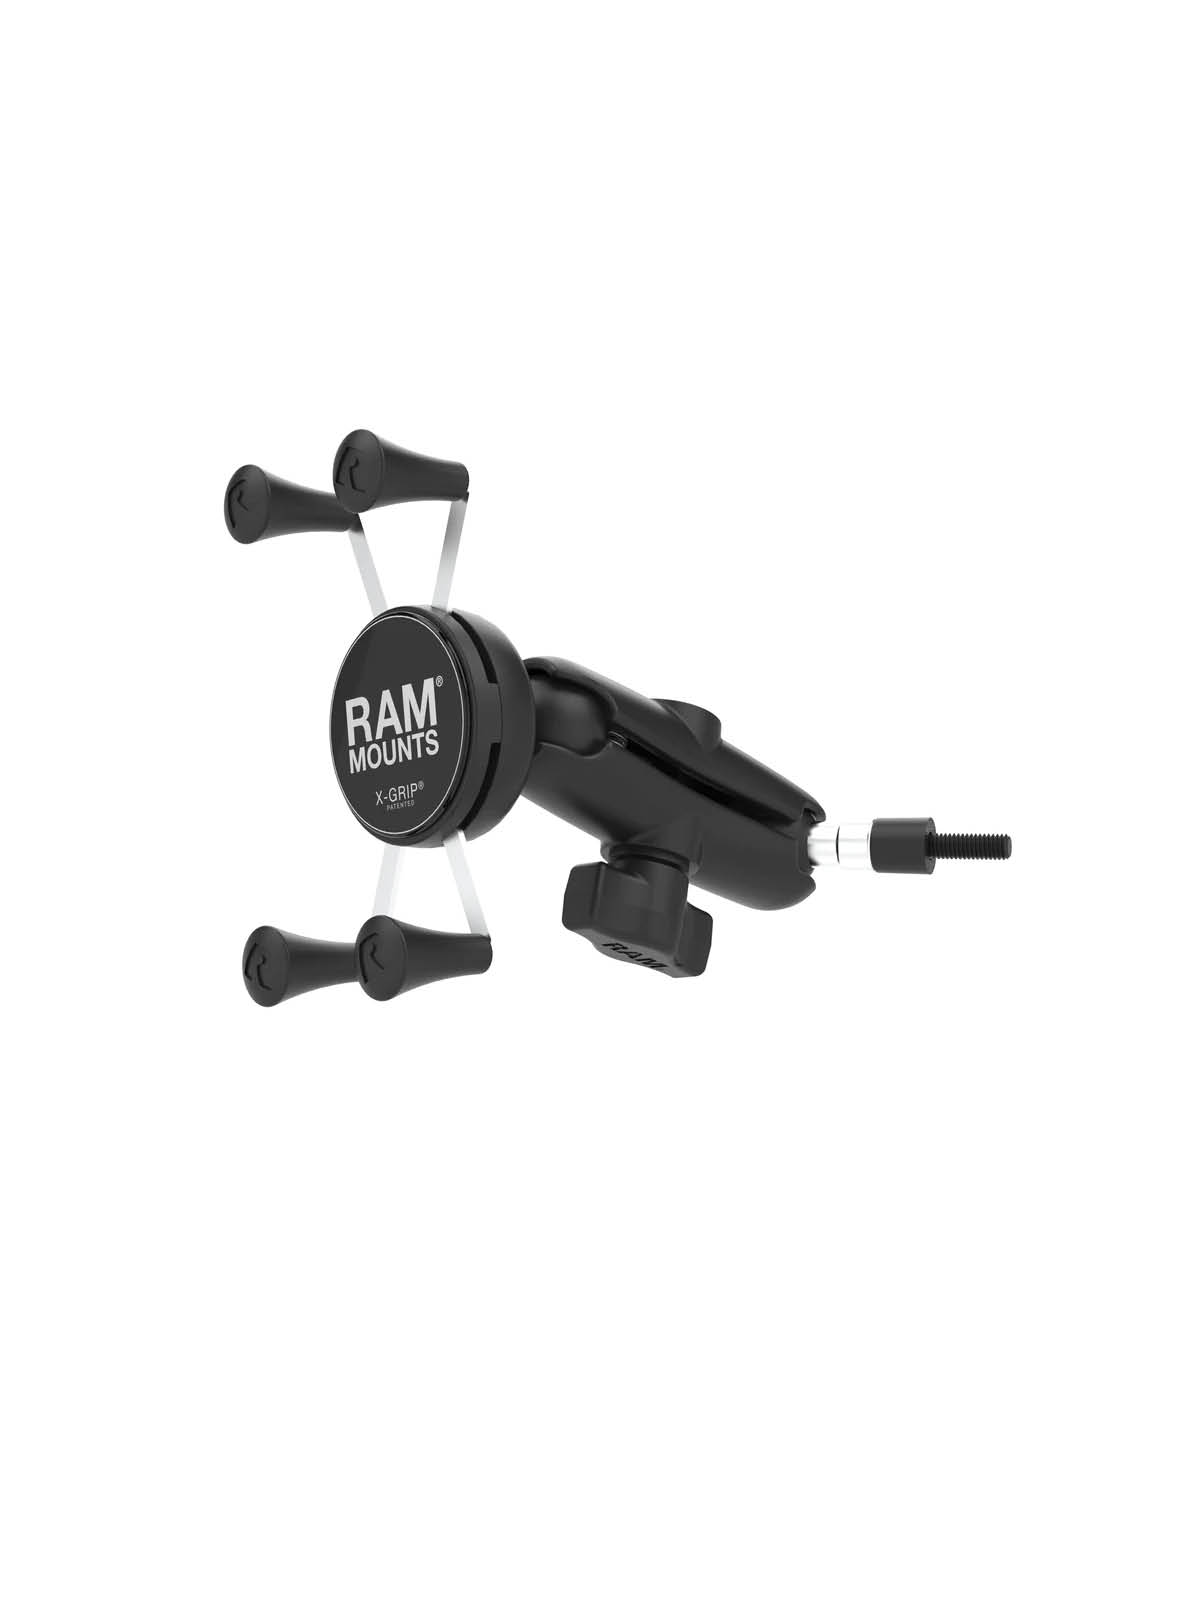 RAM Mounts X-Grip Halterung für Smartphones bis 82,6 mm Breite - B-Kugel (1 Zoll), M6 Gewinde, mittlerer Verbindungsarm